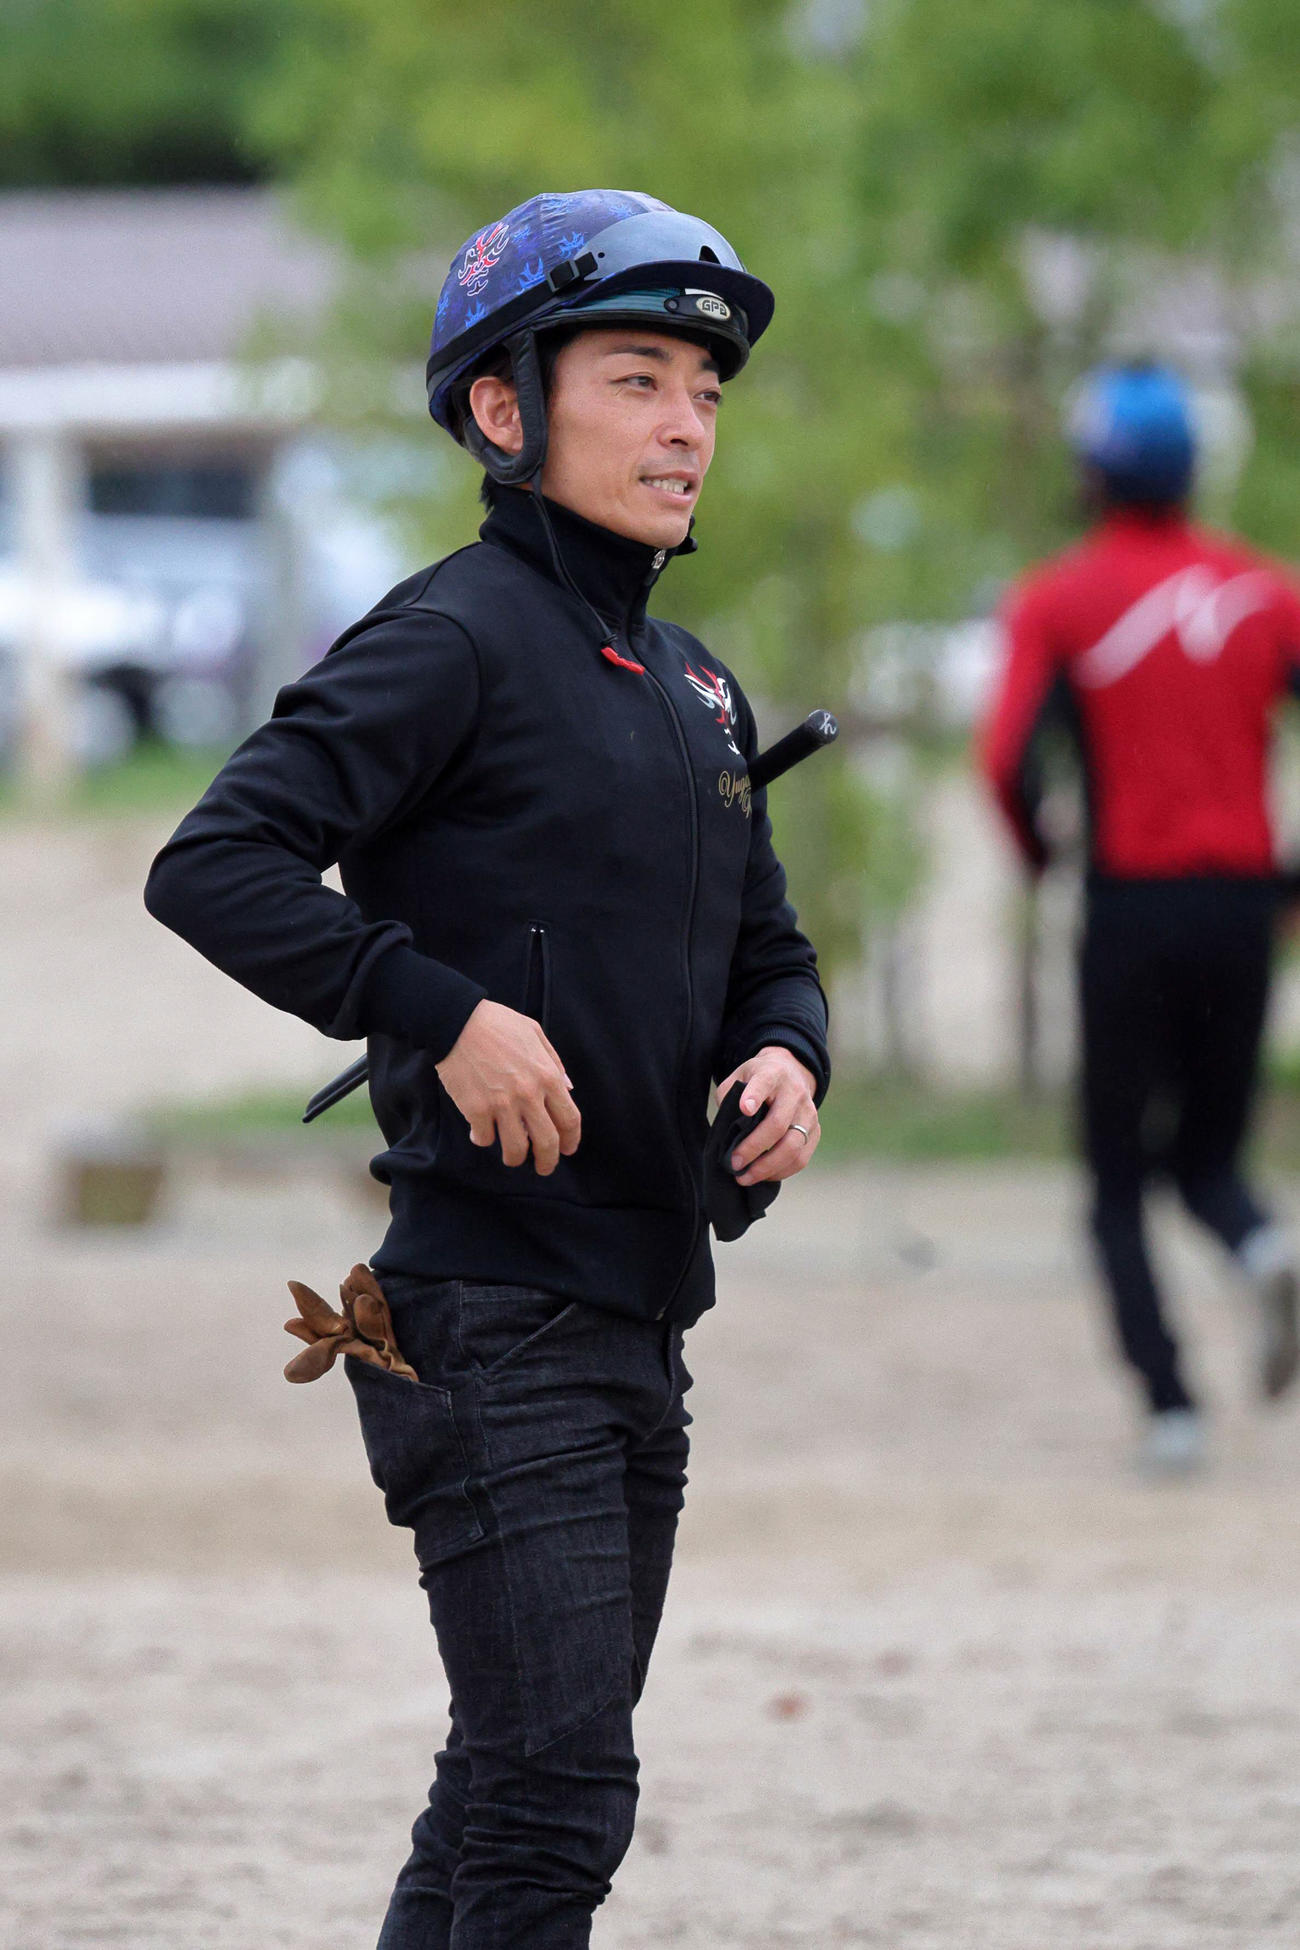 「凱旋門賞は大切なレース」だと語る川田騎手